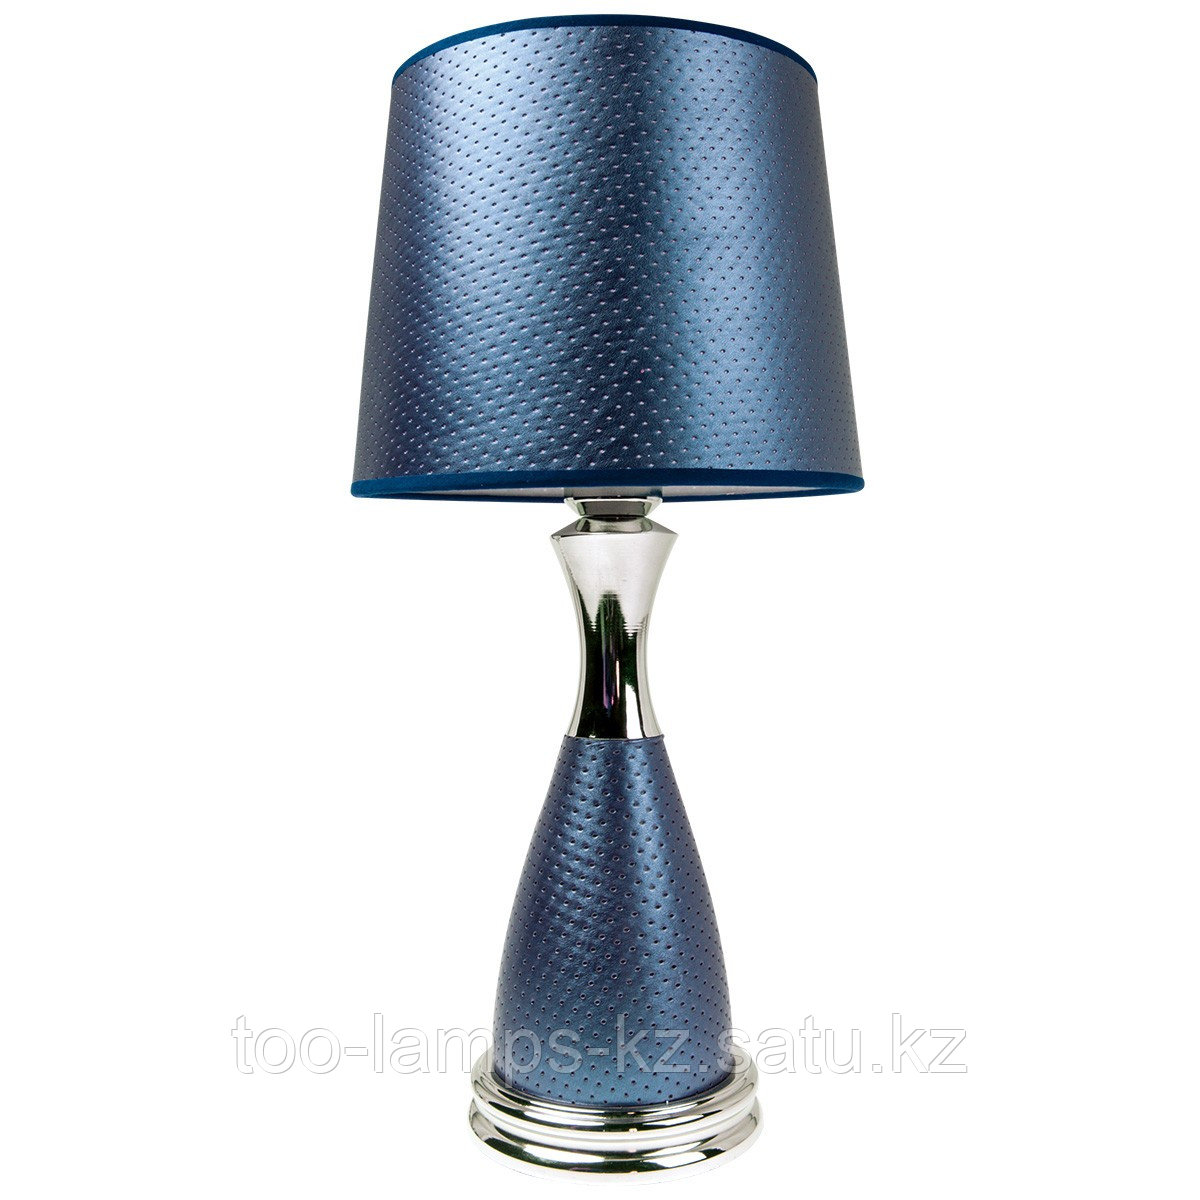 Настольная лампа 13038 Blue